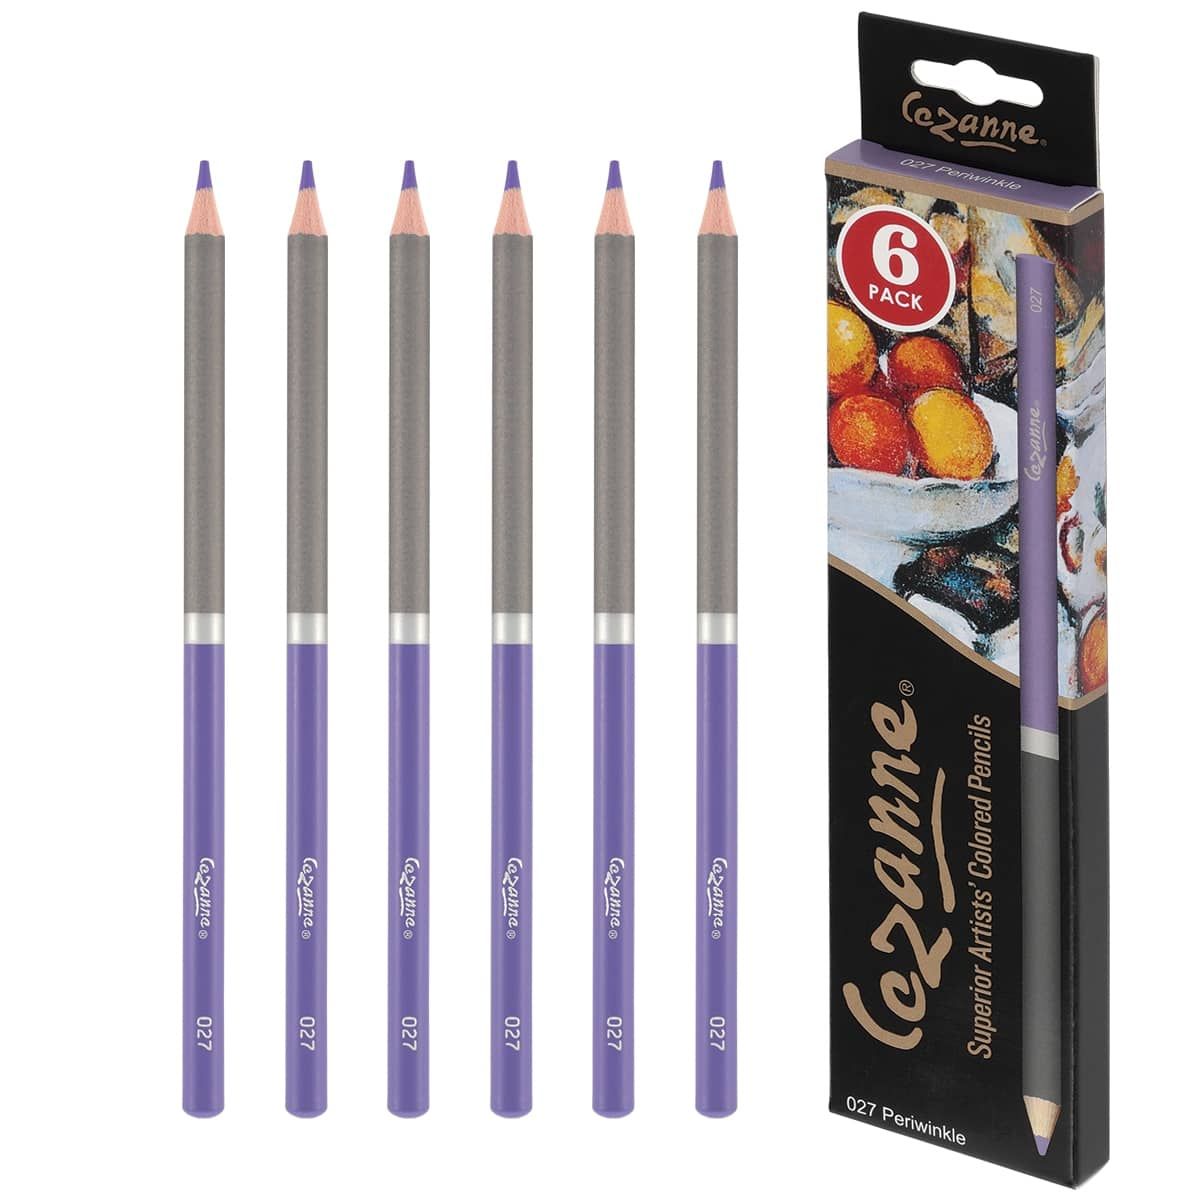 Cezanne Premium Colored Pencil Periwinkle, Box of 6